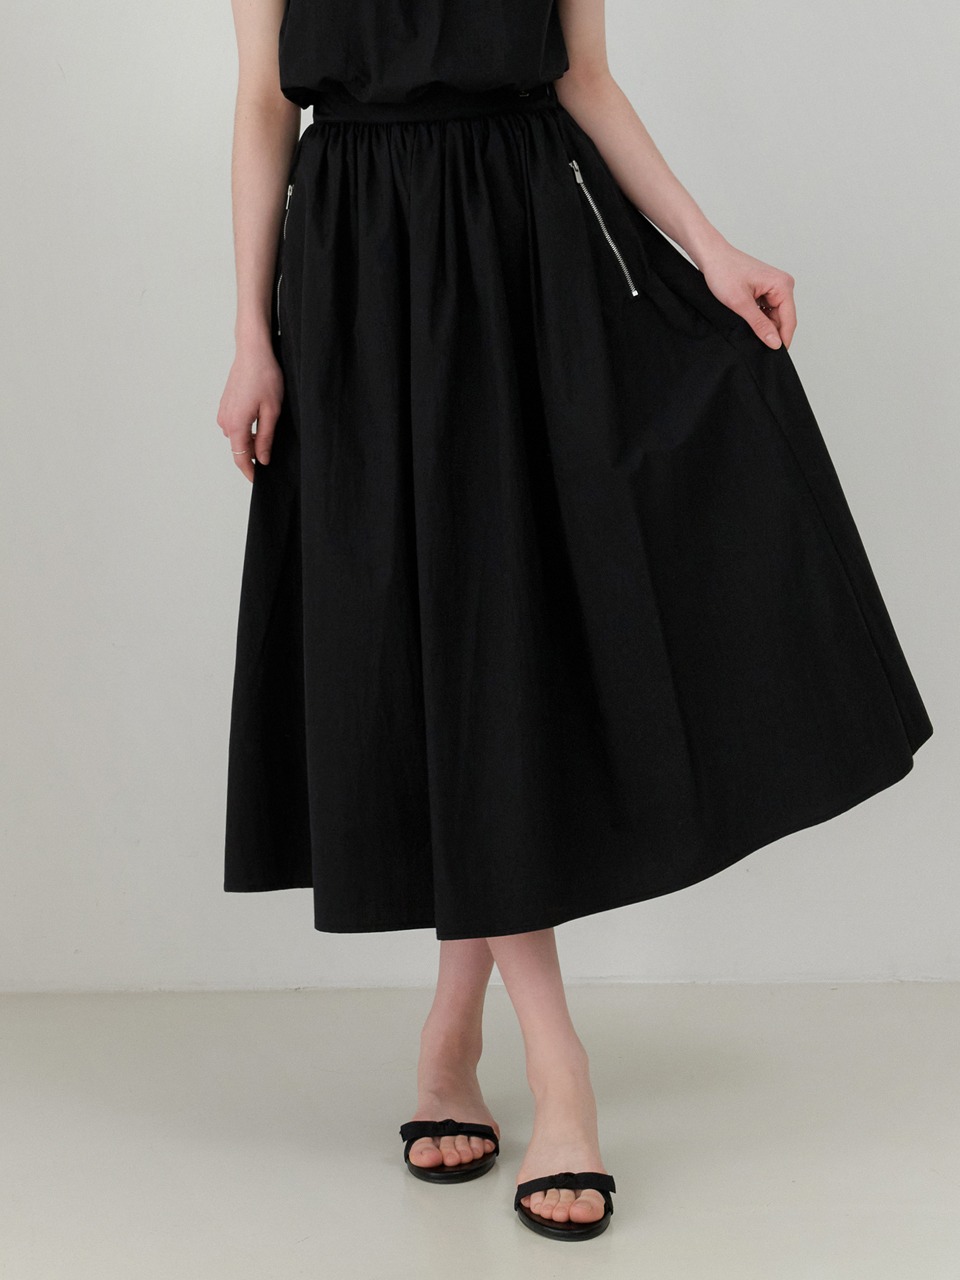 Roof shirring skirt (black)